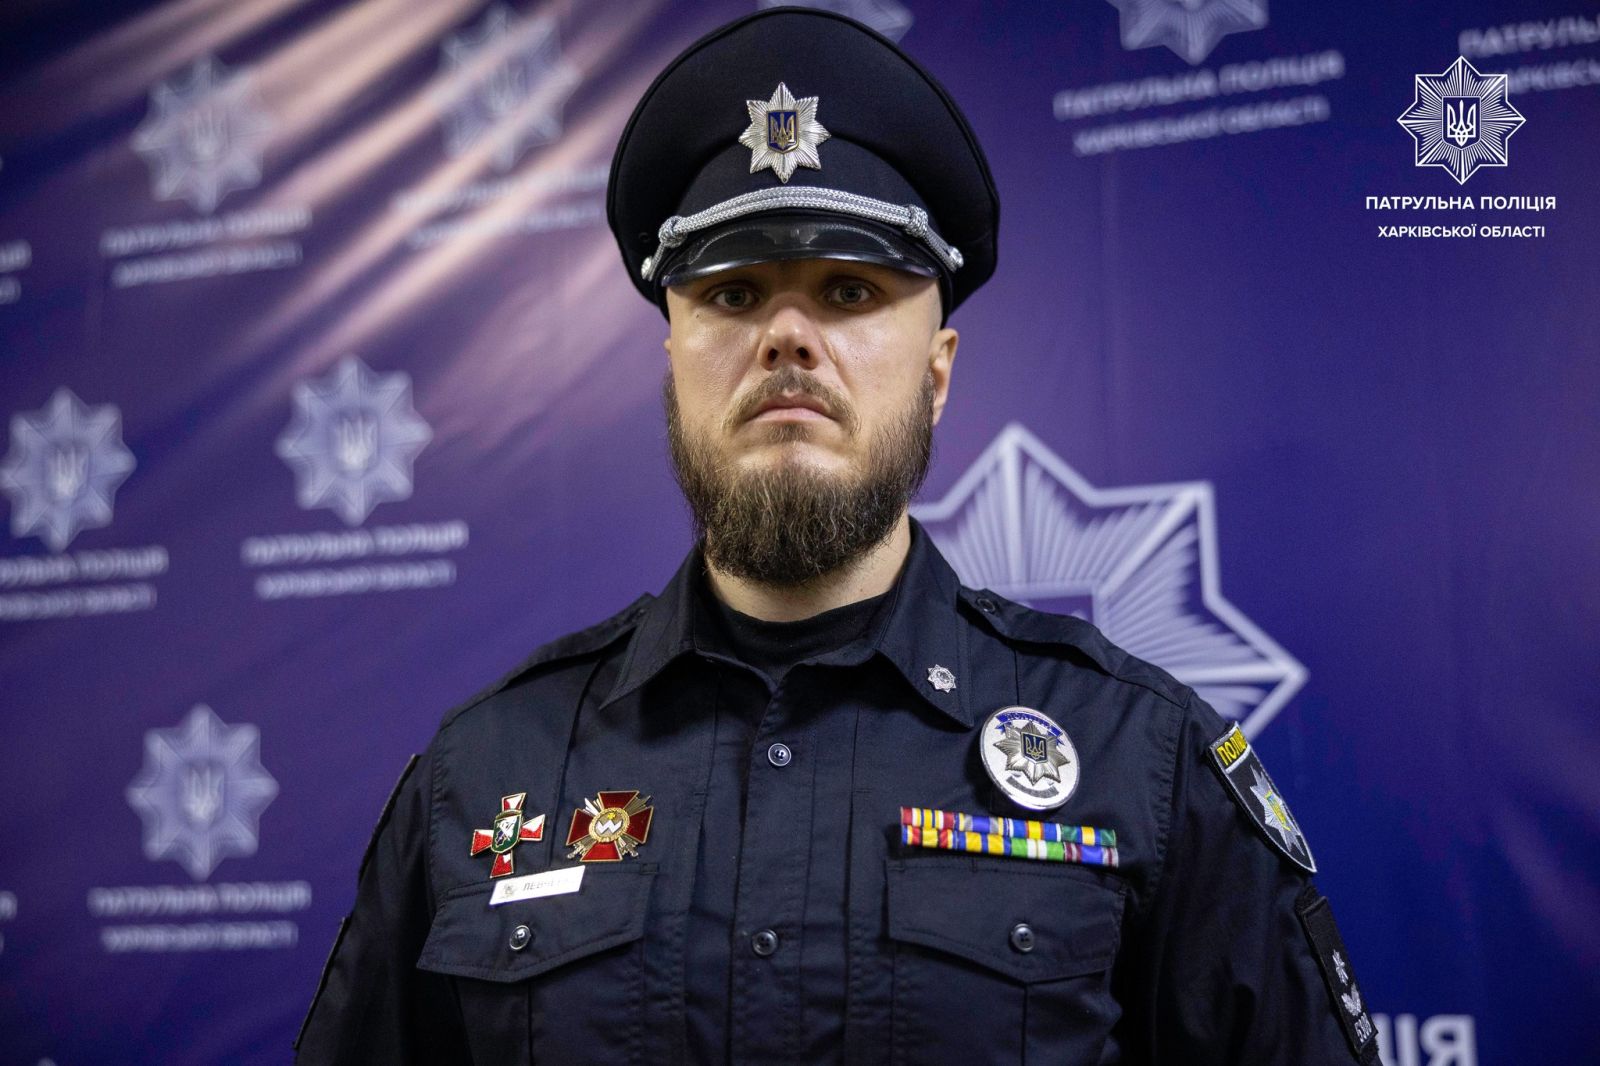 Віктор Левченко - новий очільник управління патрульної поліції Харківської області